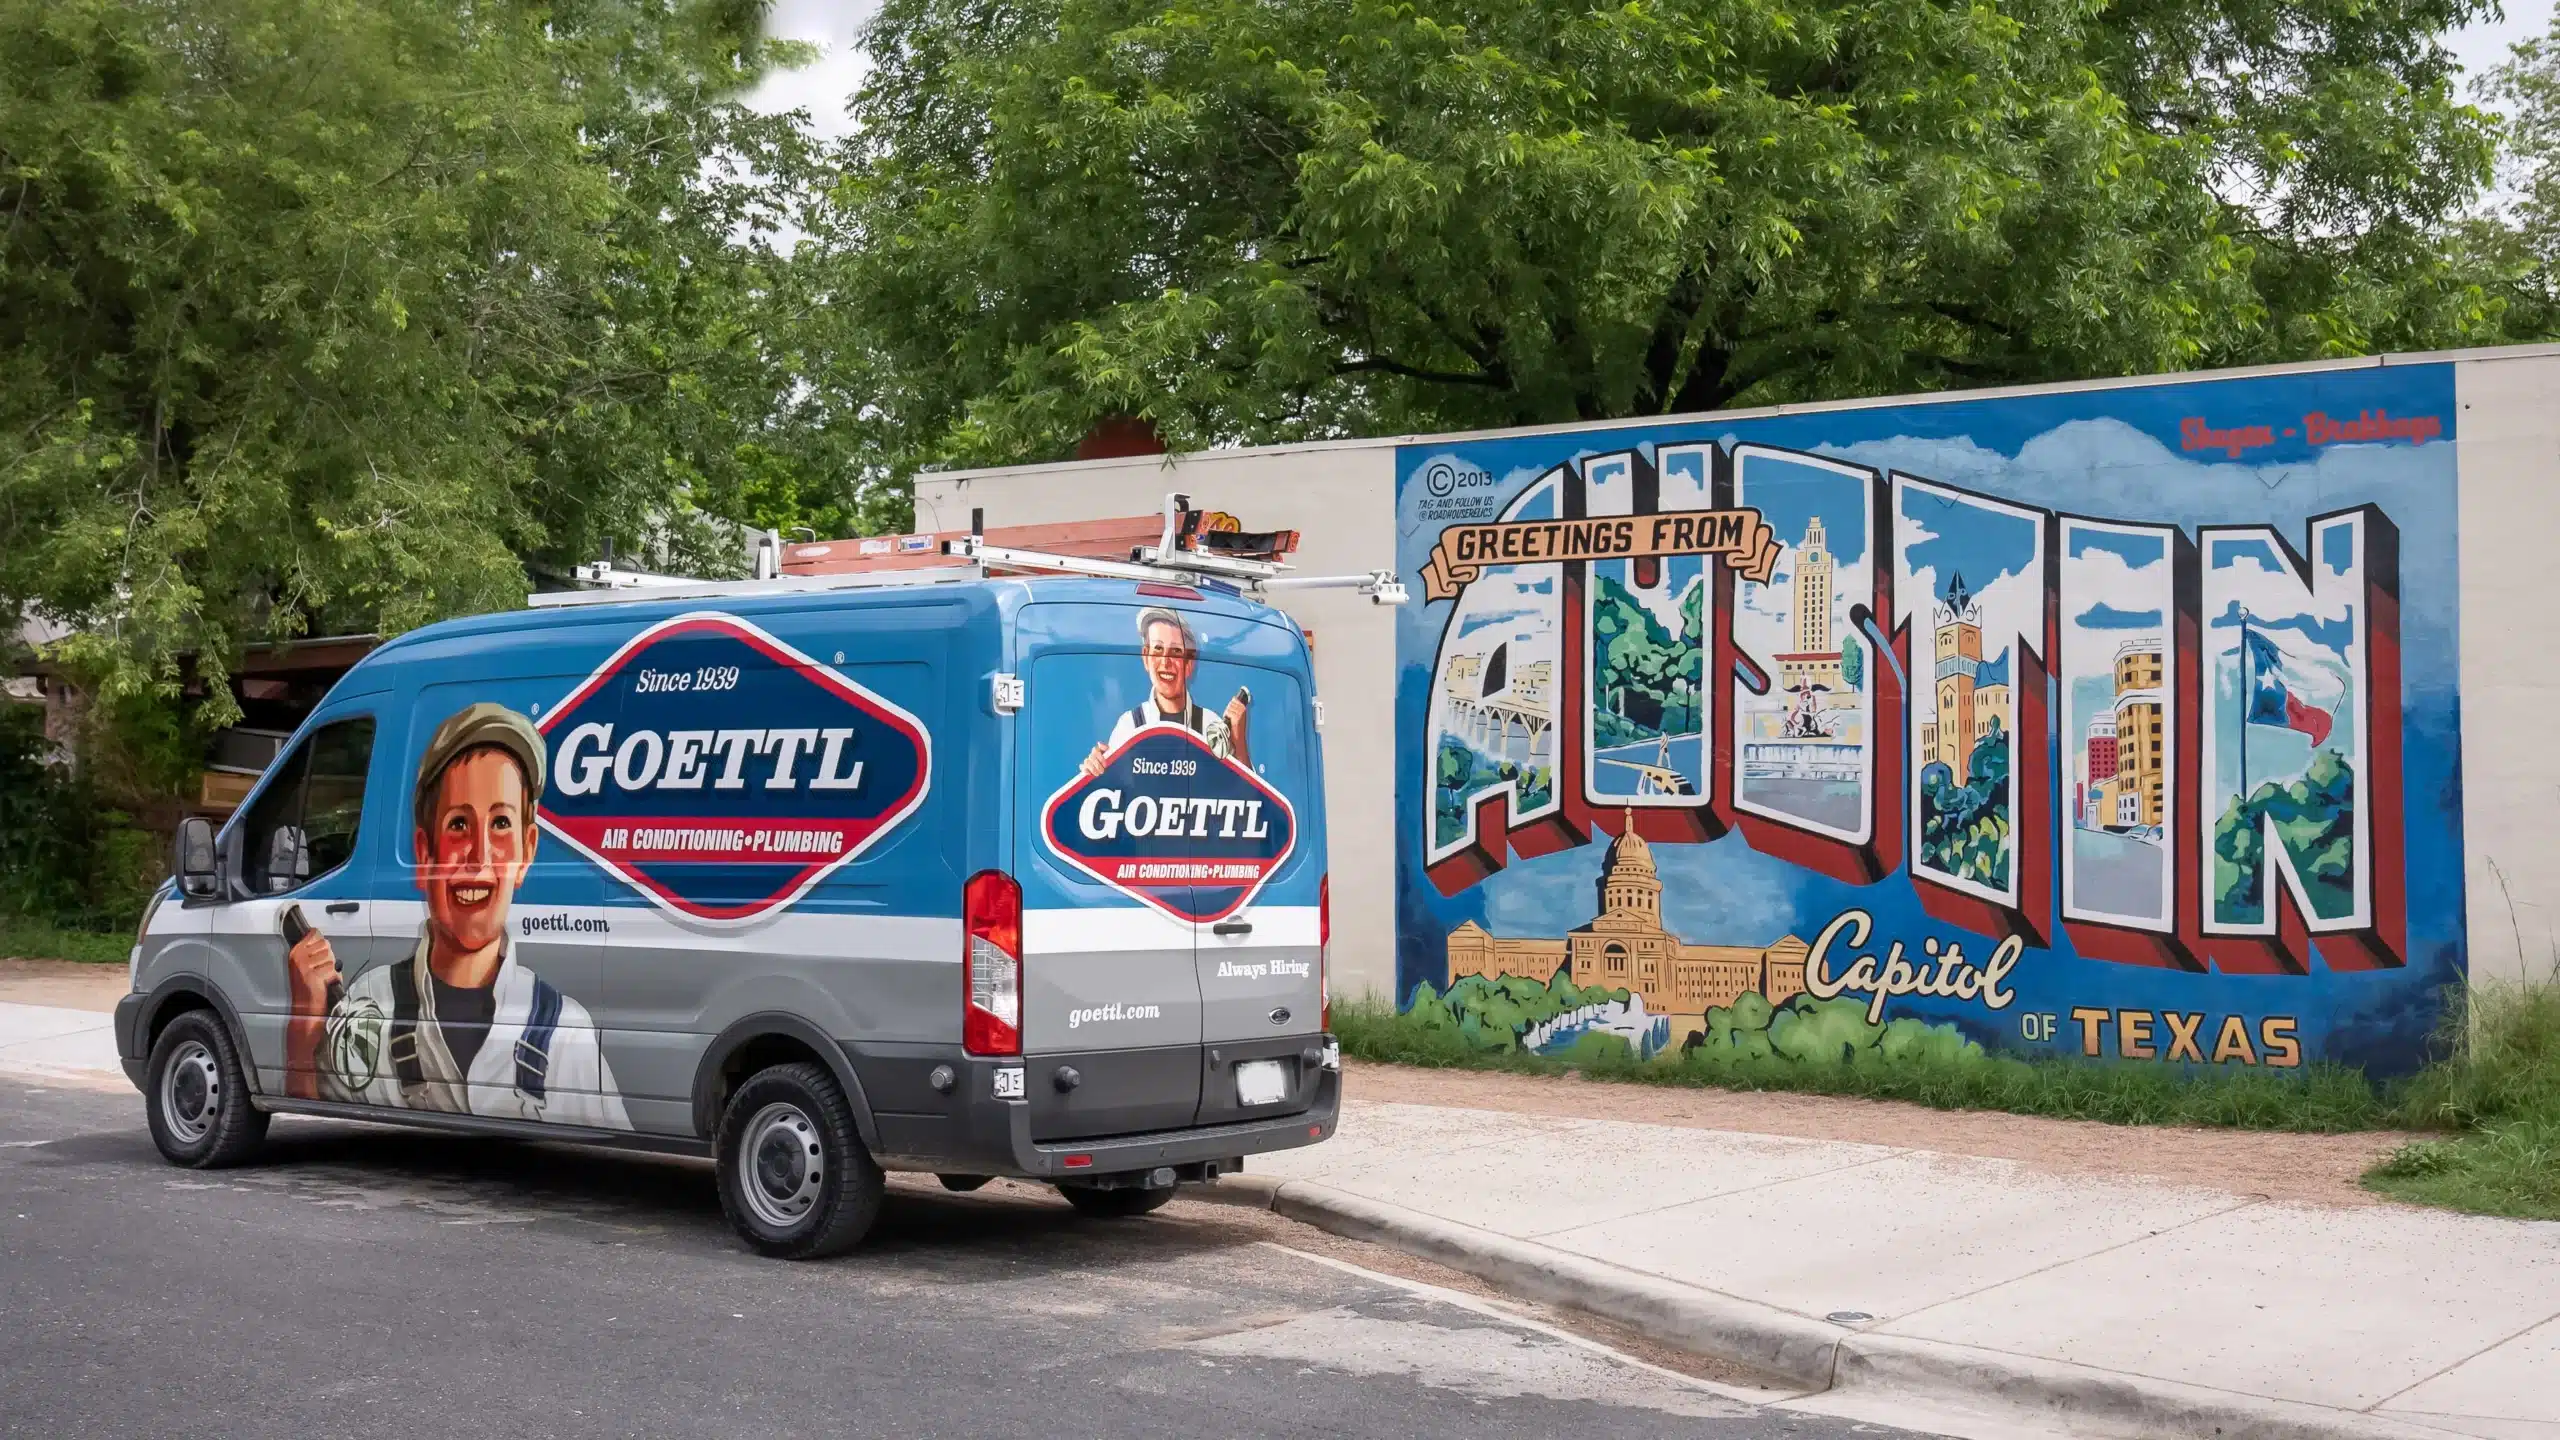 Goettl van in front of the Austin city art